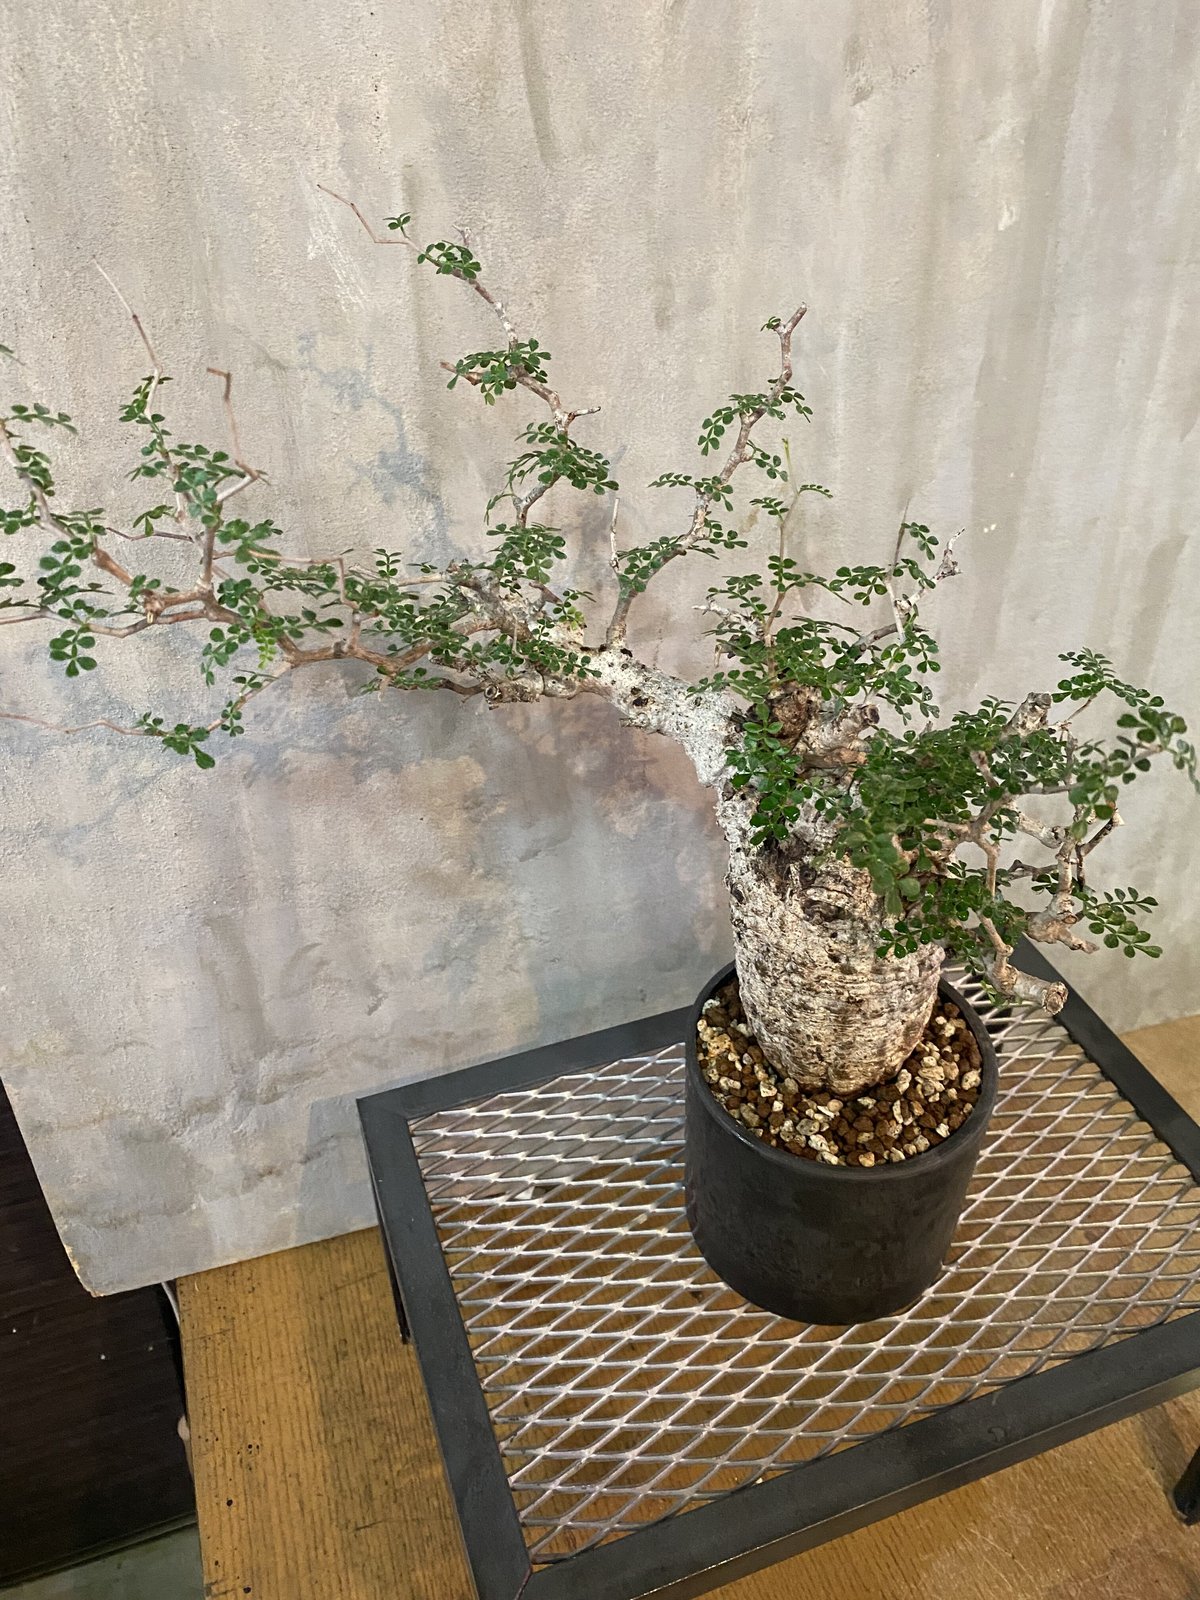 【極太パワータンク】 極美形 オペルクリカリアパキプス コーデックス 塊根植物